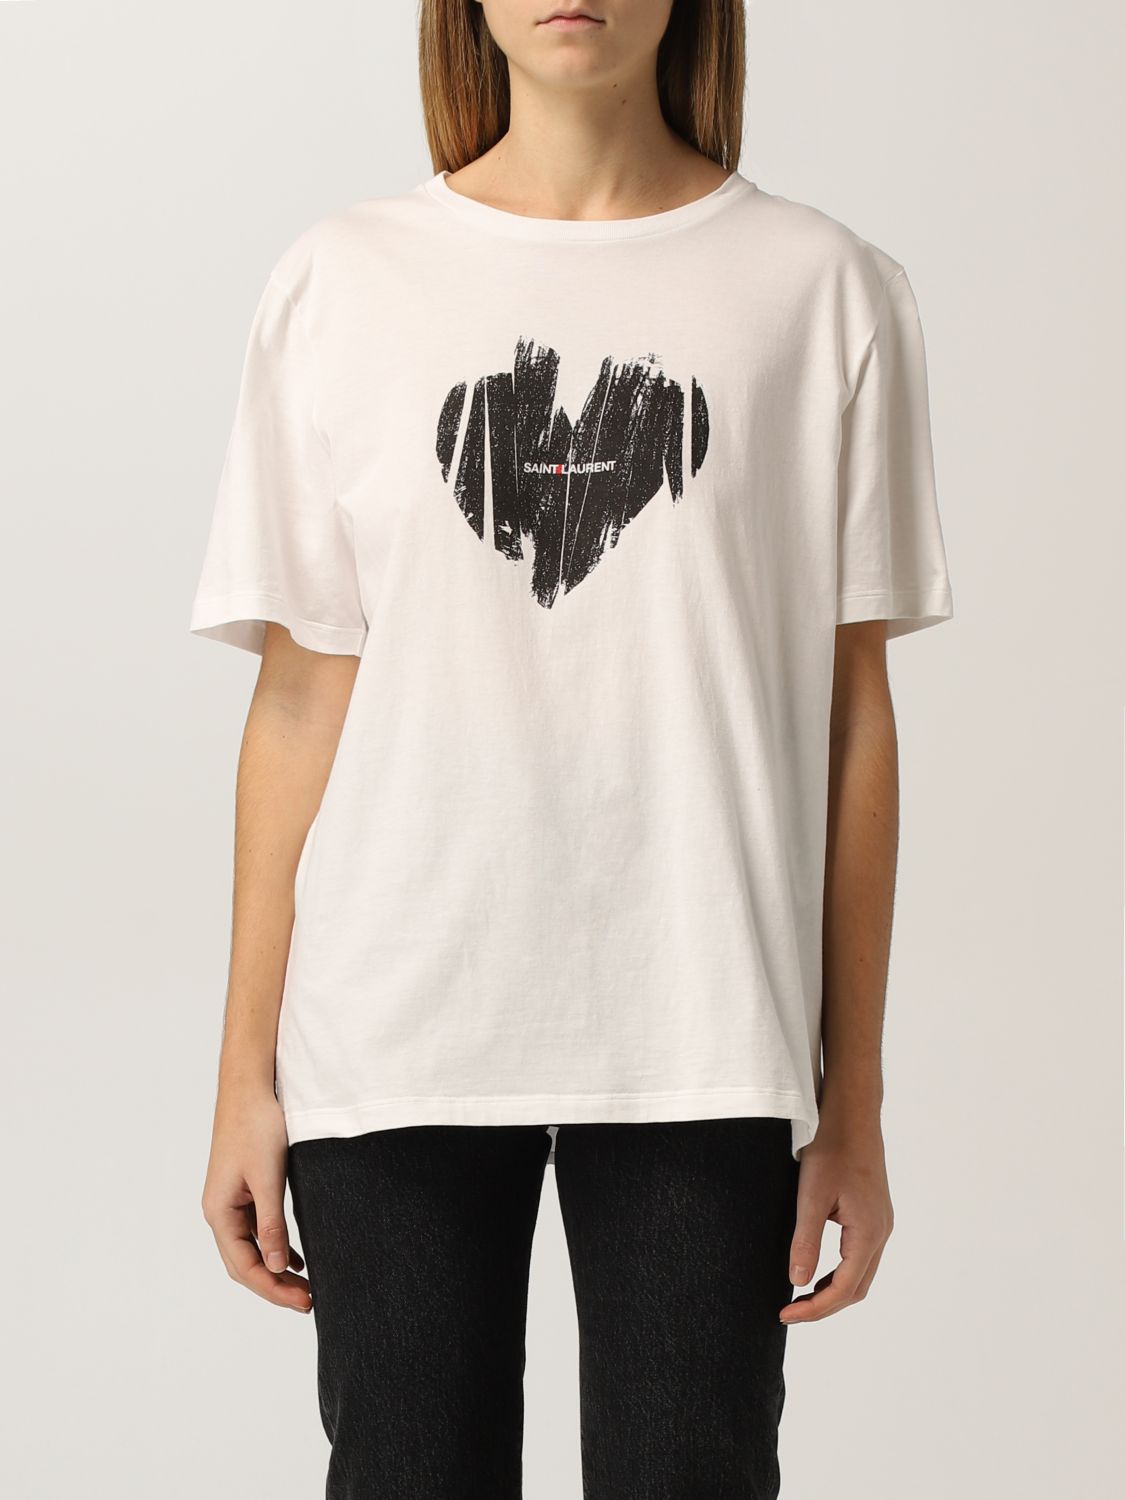 Camiseta Saint Laurent: Camiseta mujer Saint Laurent nata 1